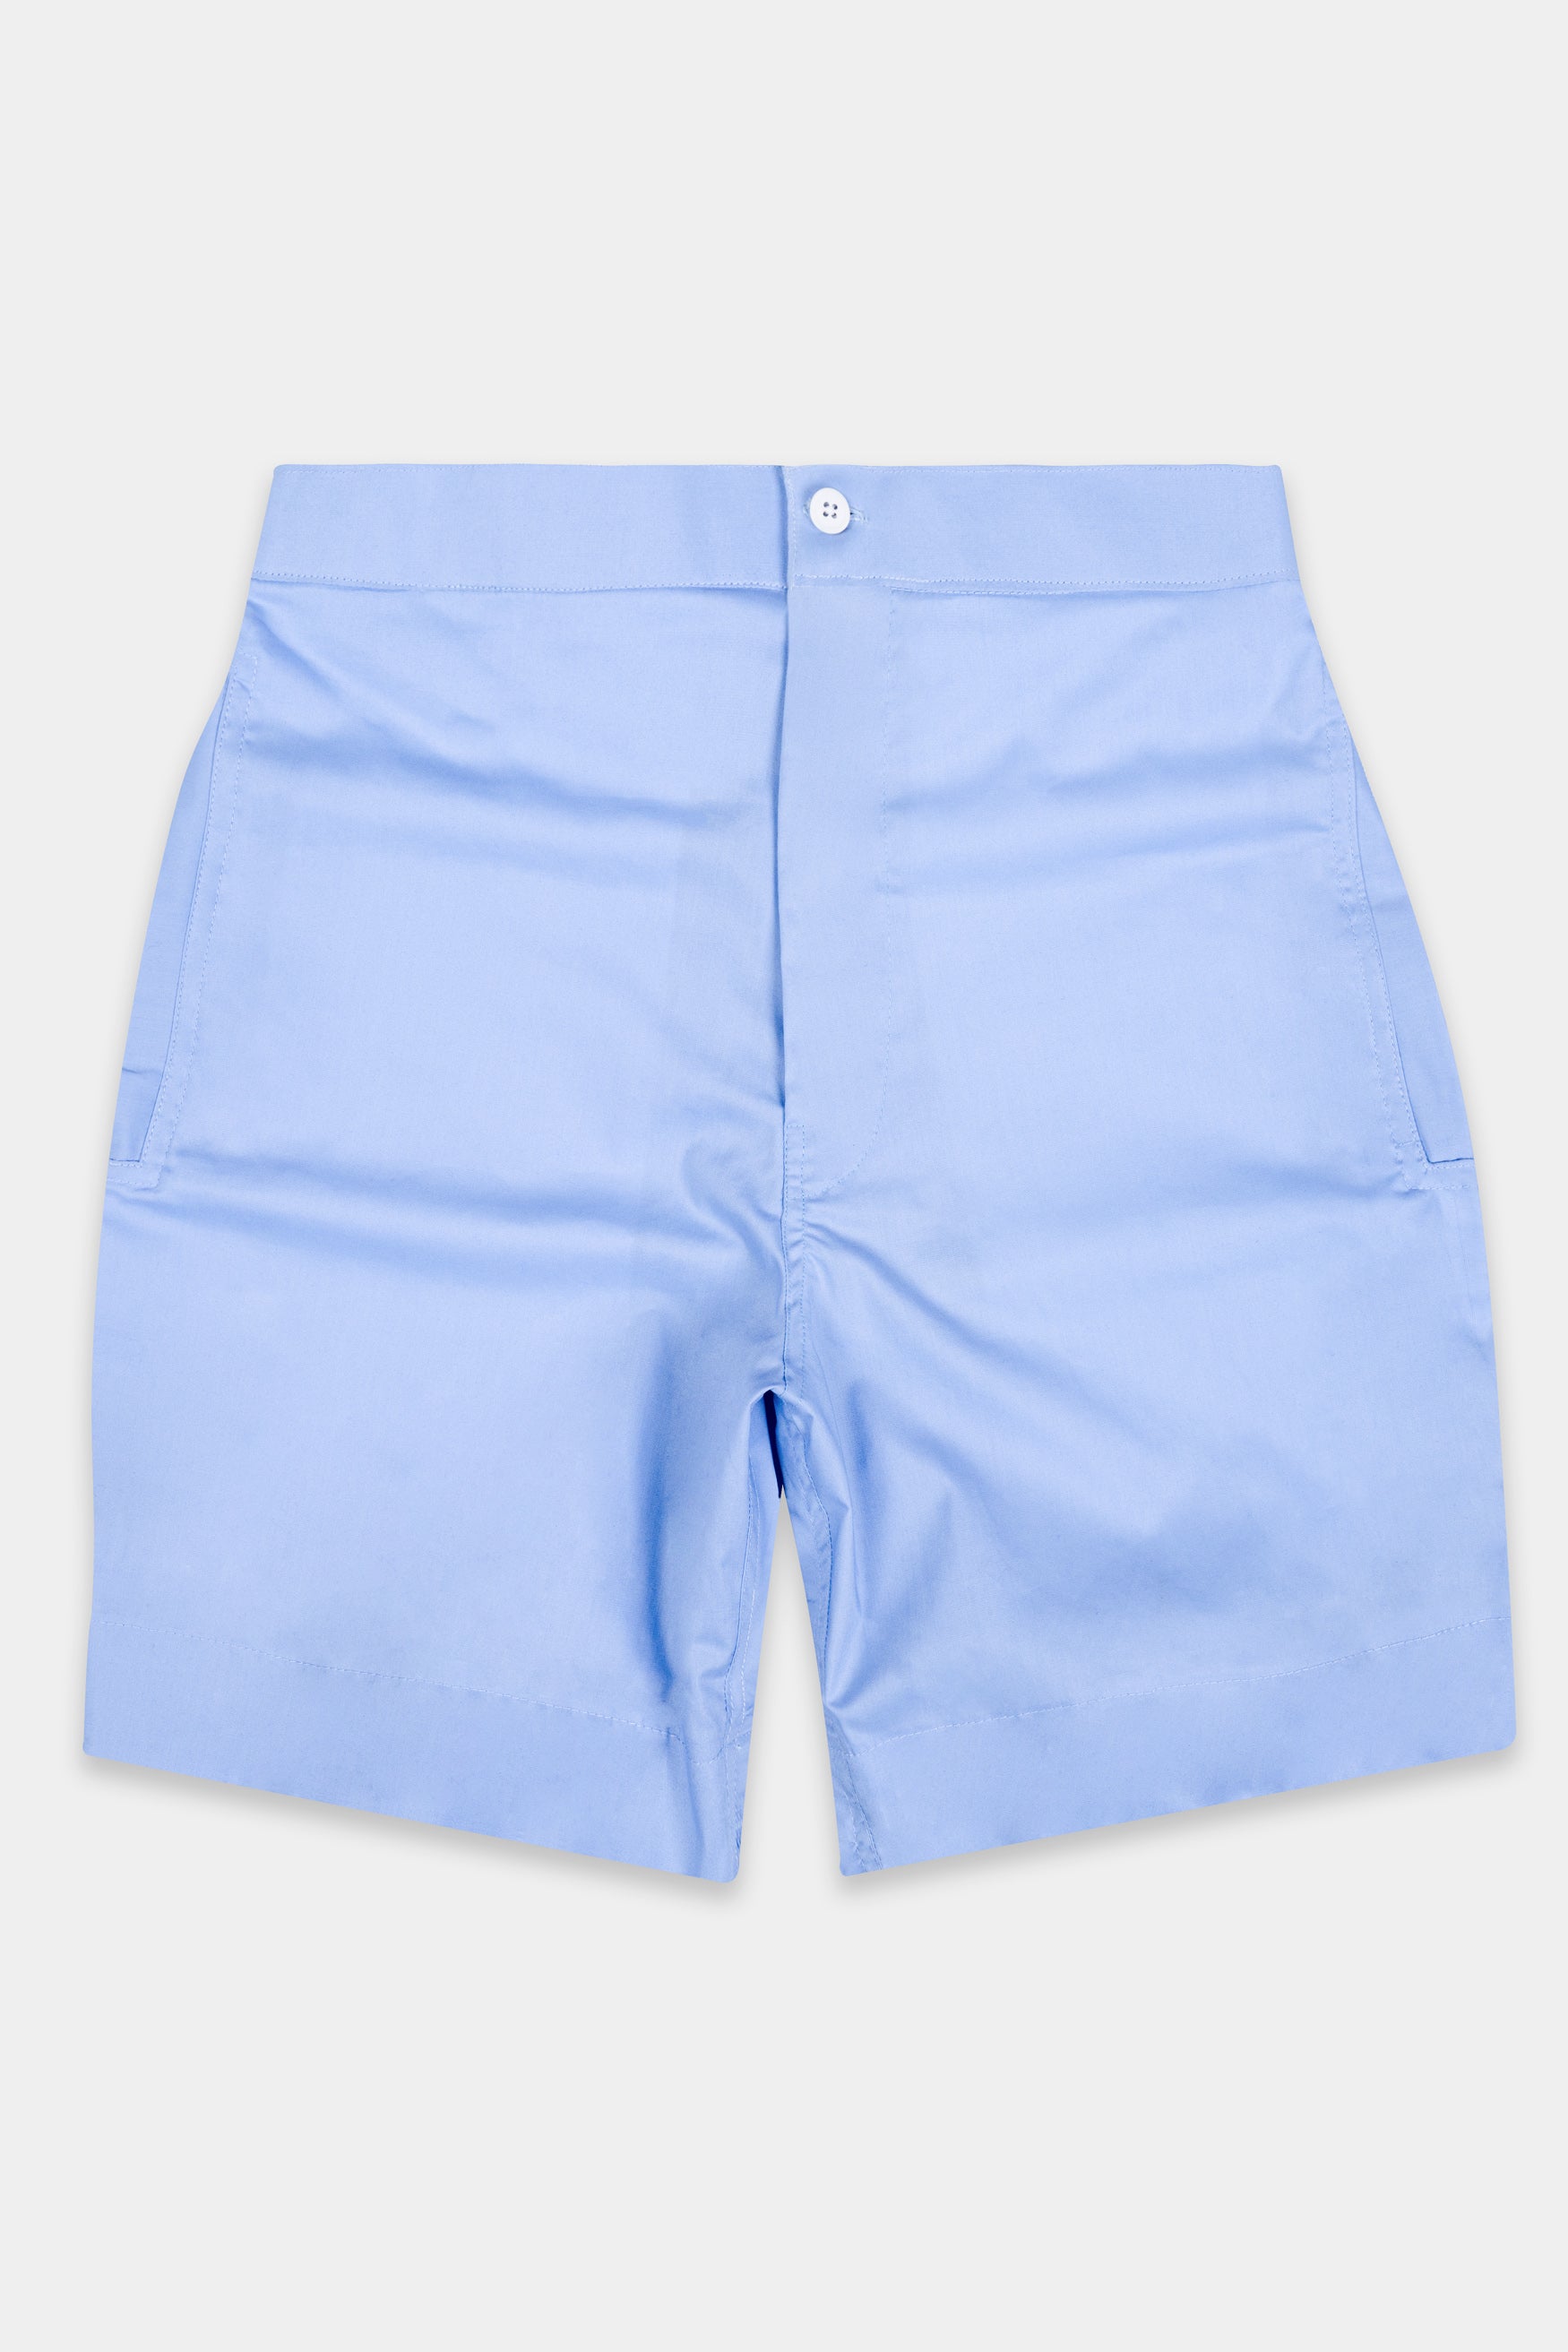 Casper Blue Premium Cotton Shorts